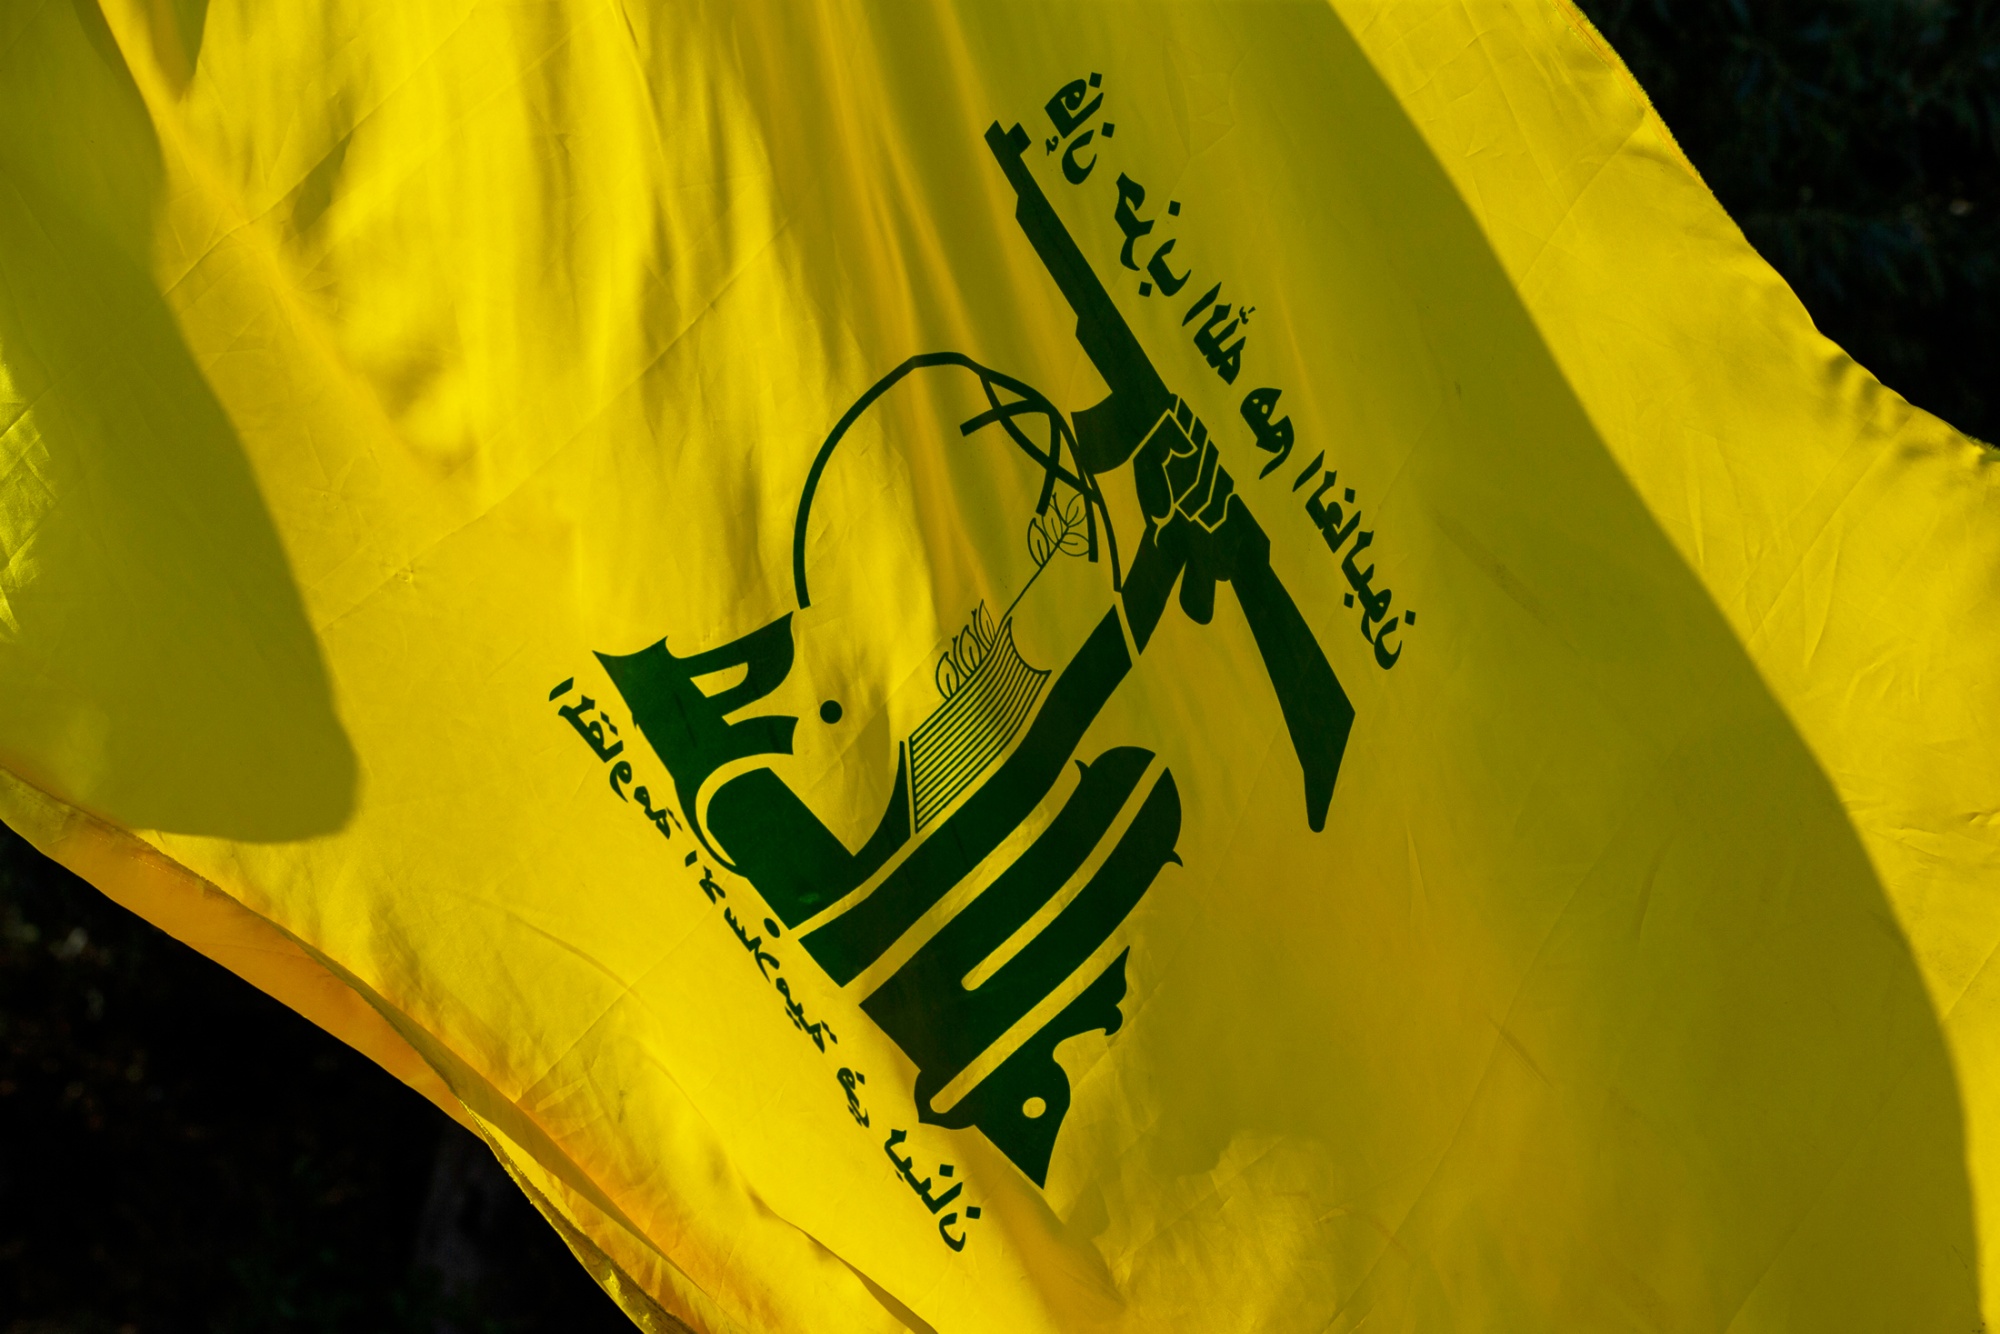 Hamas savaşçıları Lübnan, Suriye ve İran’da eğitim aldılar / Tüm silahların kullanımını İran öğretti